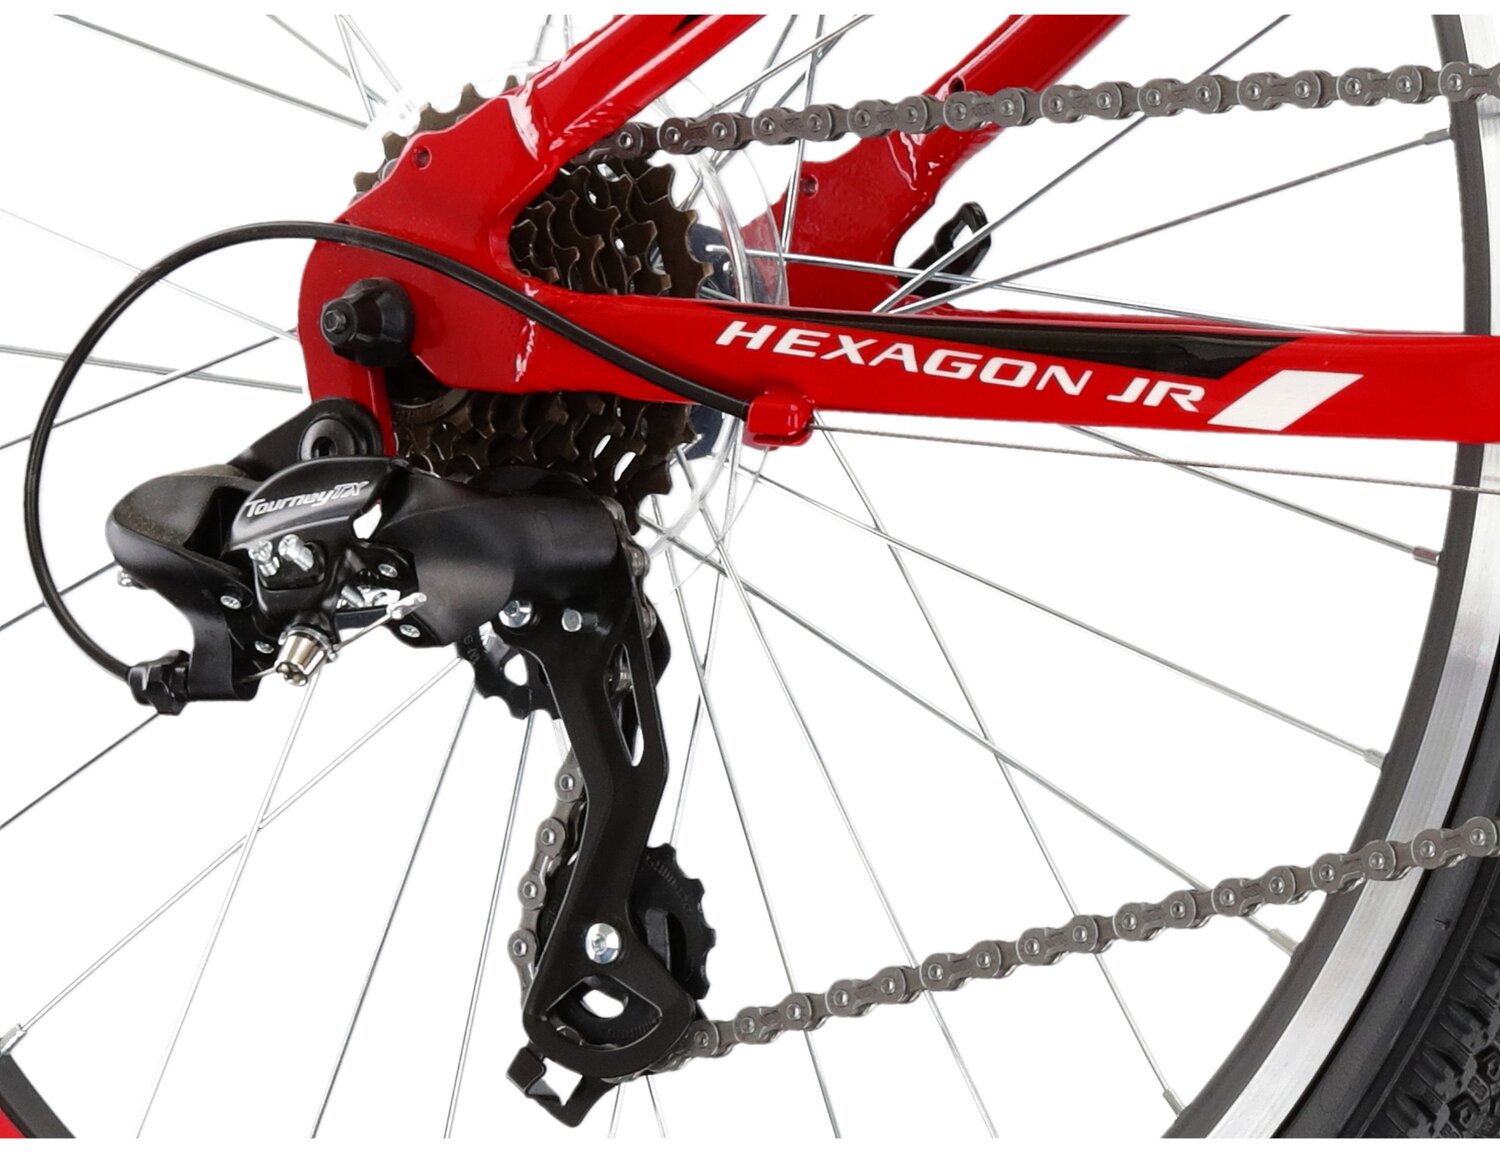  Tylna ośmiobiegowa przerzutka Shimano Tourney TX800 oraz hamulce v-brake w rowerze juniorskim KROSS Hexagon JR 1.0 